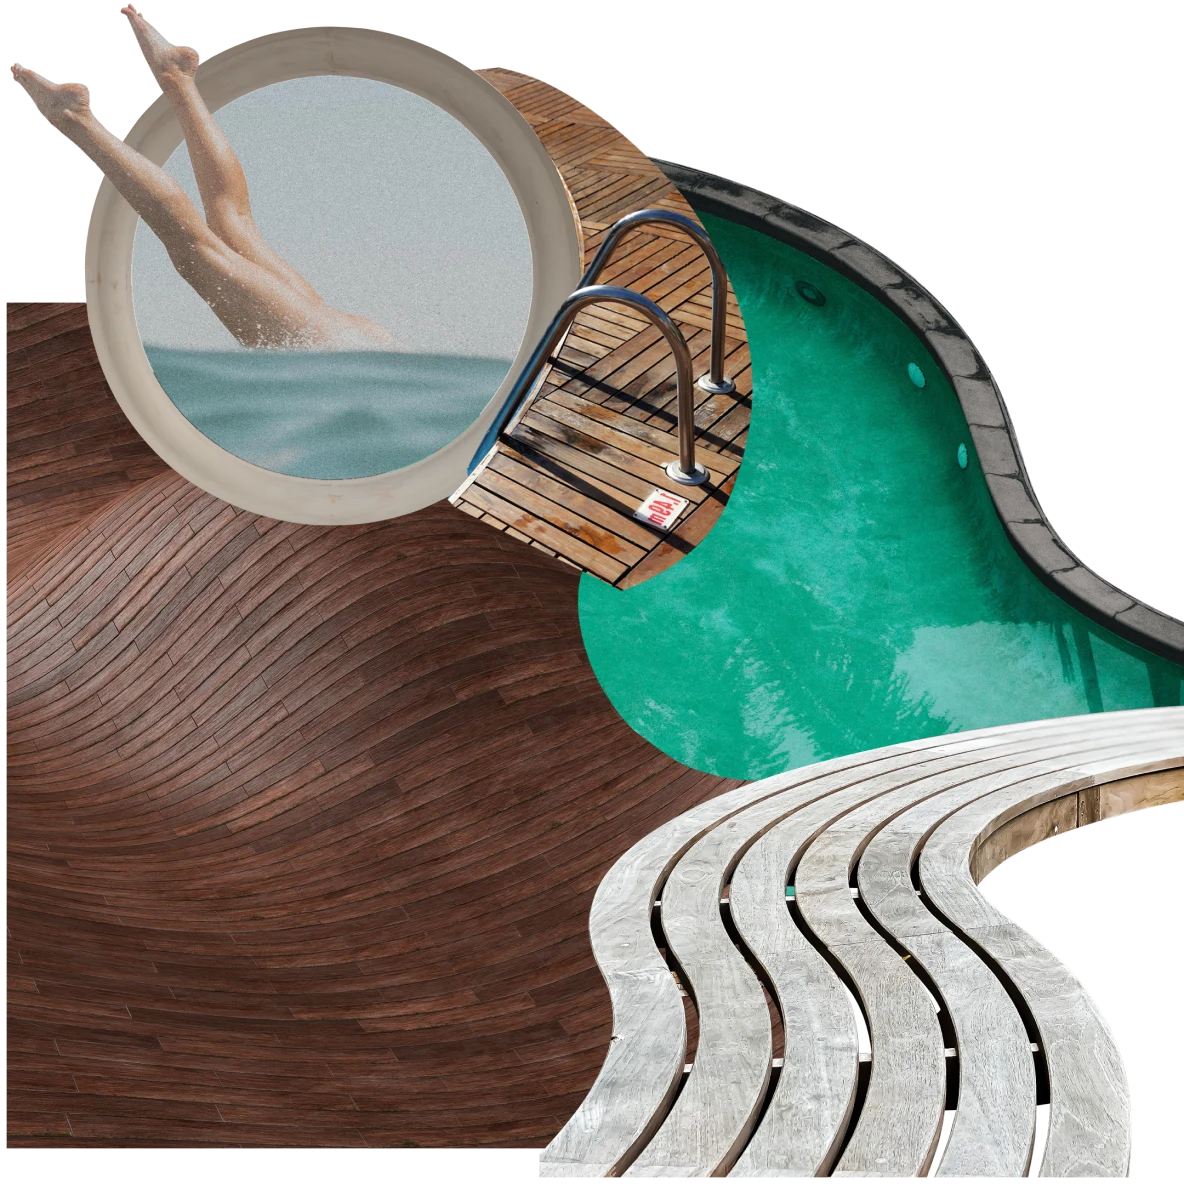 Collage de artículos relacionados con piscinas. Piernas sumergiéndose en el agua dentro de un jacuzzi redondo, desde una vista aérea. Pasarela curva, panel de madera oscura y borde de piscina.